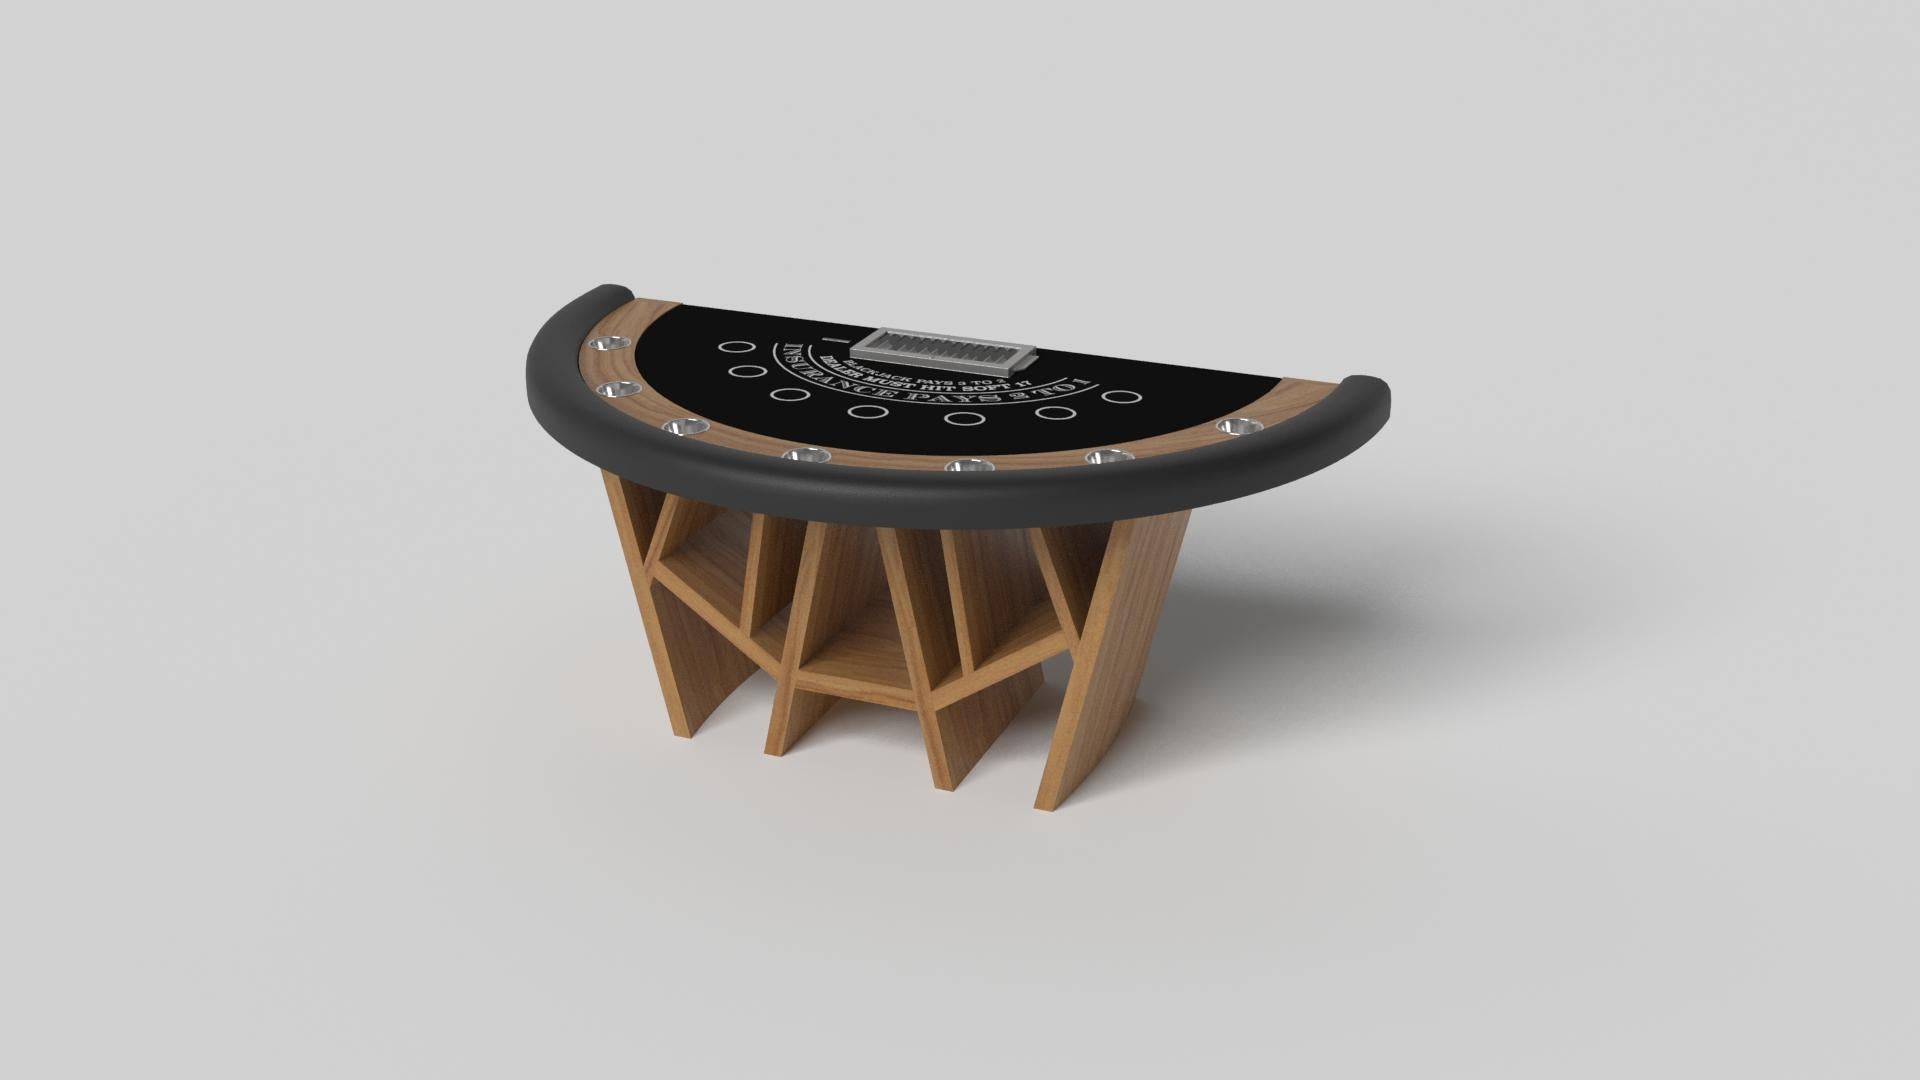 Der Blackjack-Tisch Maze aus gebürstetem Aluminium zeichnet sich durch eine Kombination aus spitzen Winkeln, glatten Linien und geometrischen Konfigurationen aus. Die Basis ist von einem Labyrinth mit einem geheimnisvollen Motiv inspiriert. Dieser